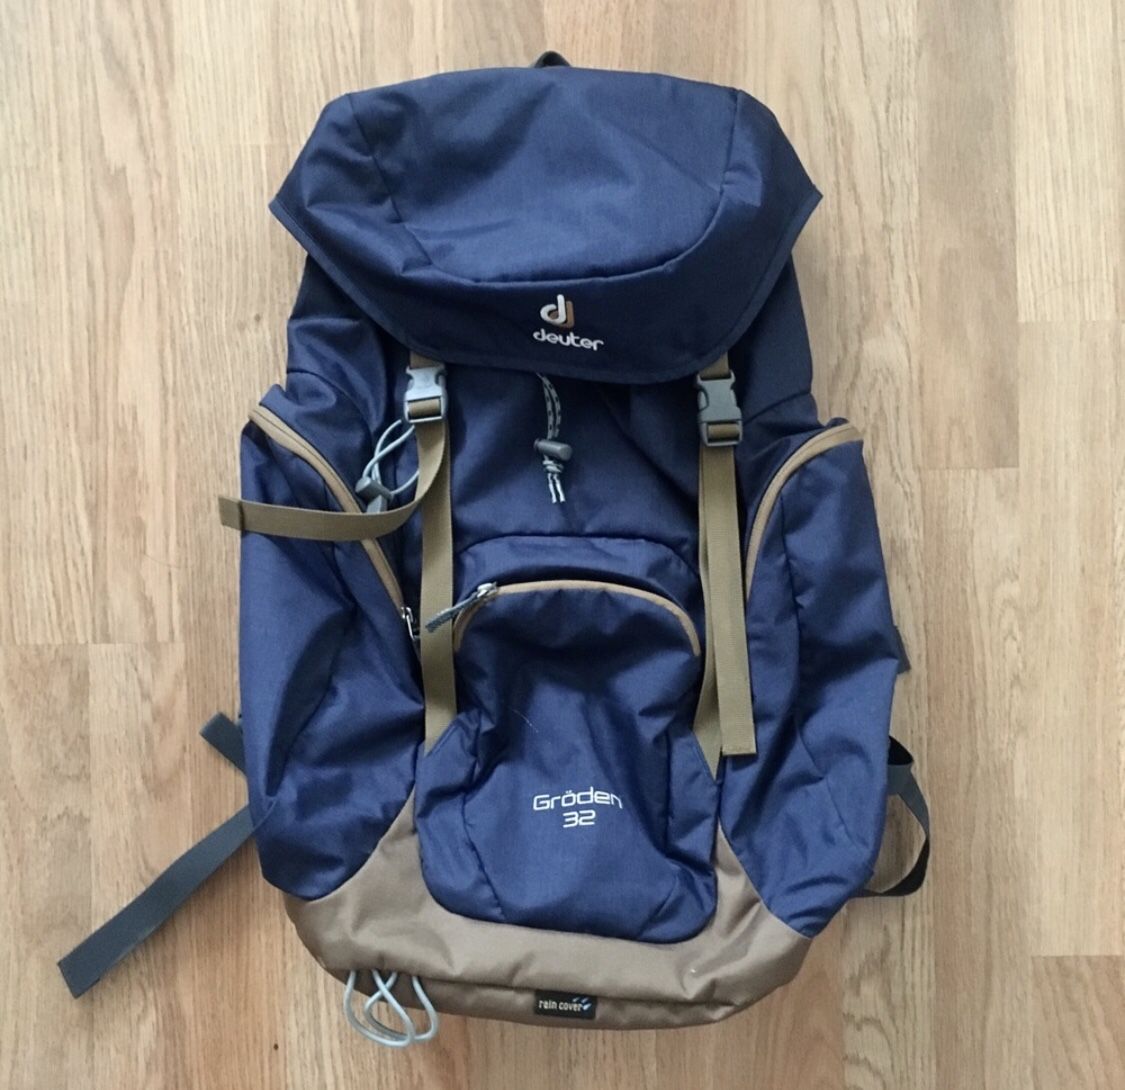 Deuter groden 32L backpack